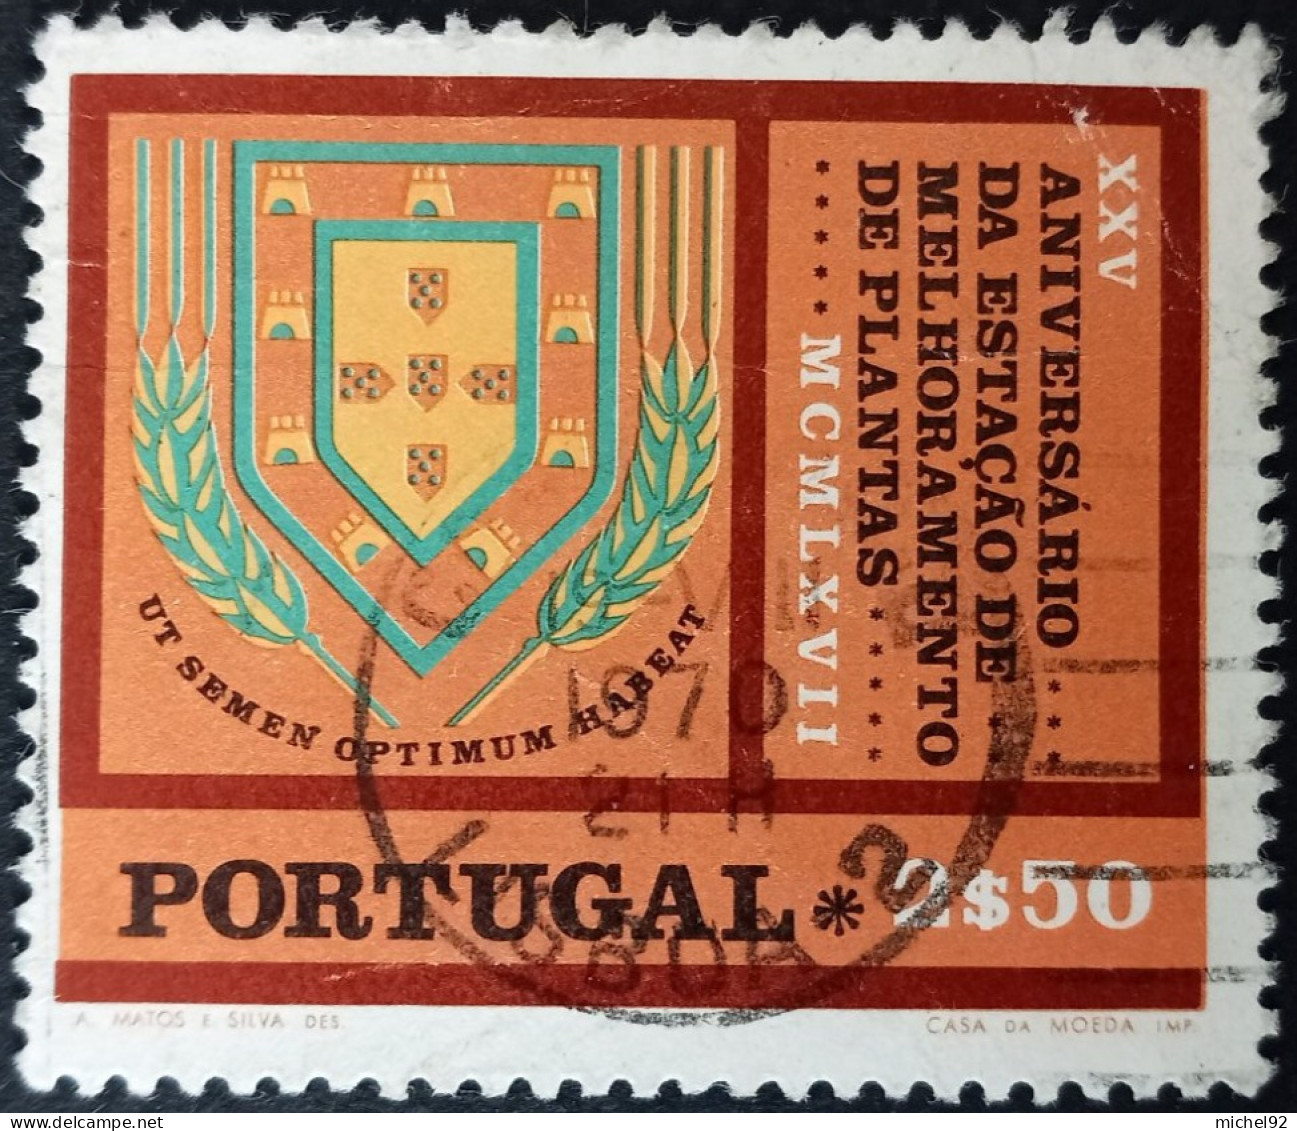 Portugal 1970 - YT N°1084 - Oblitéré - Oblitérés